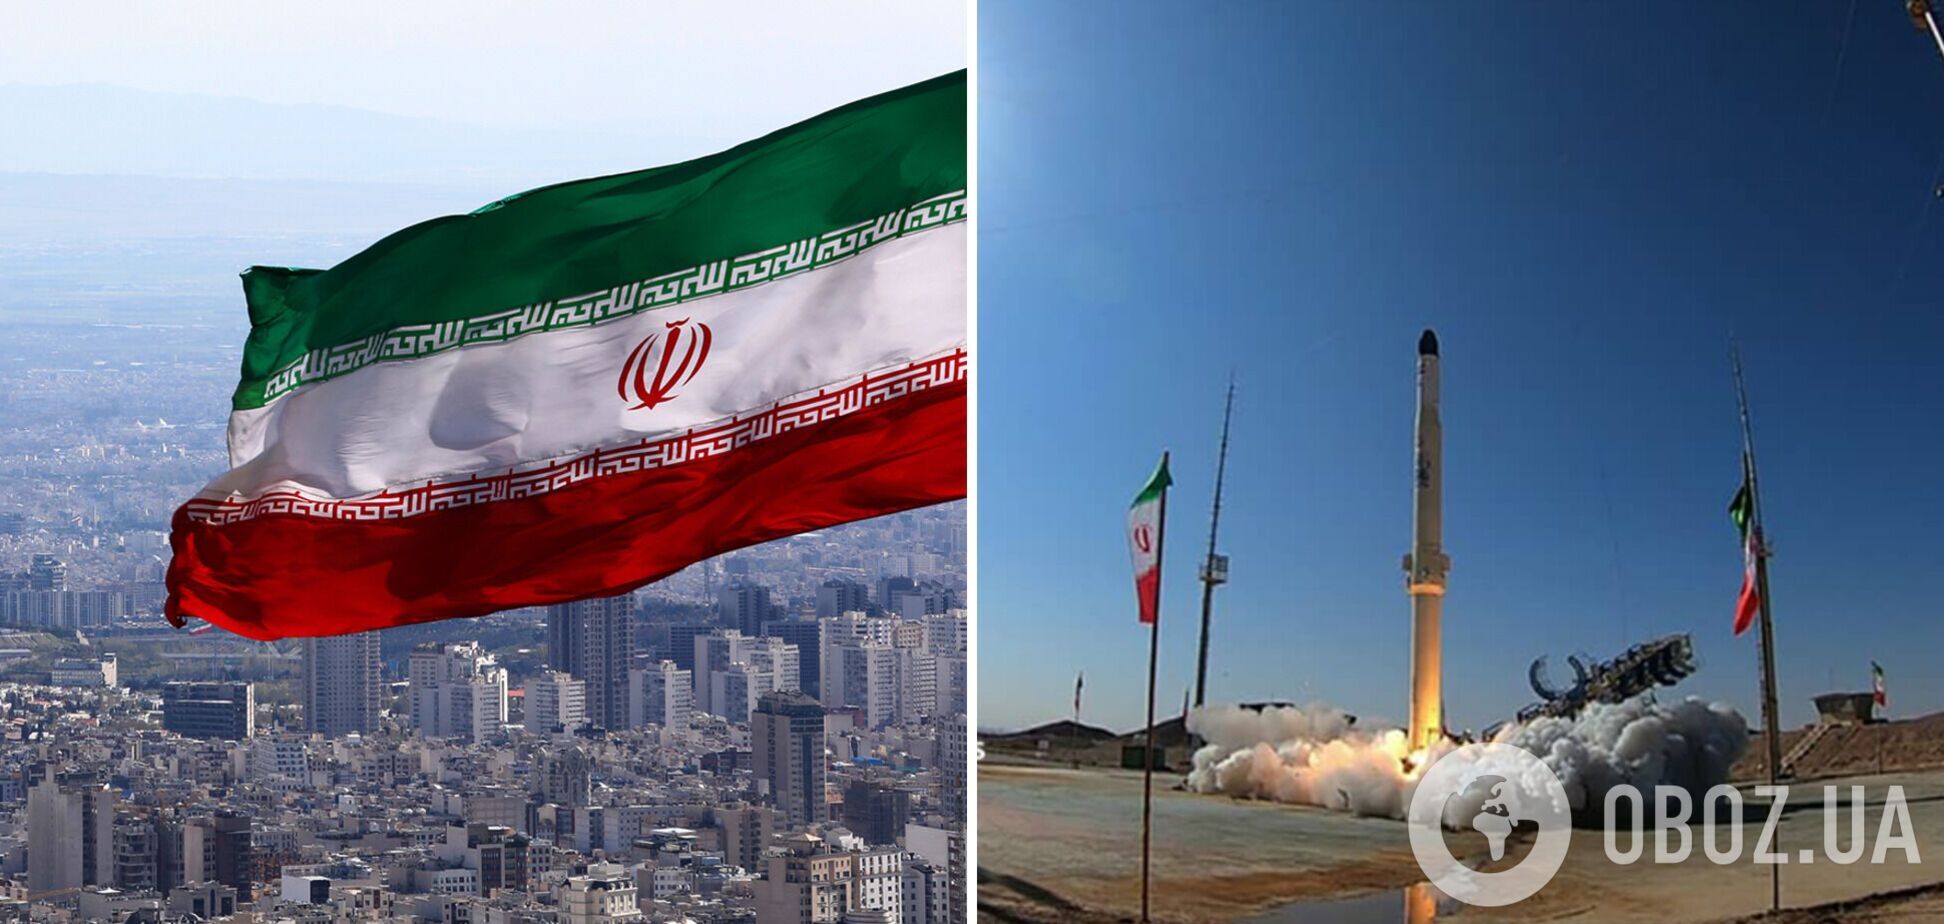 Иран сообщил о запуске ракеты в космос: в чем угроза